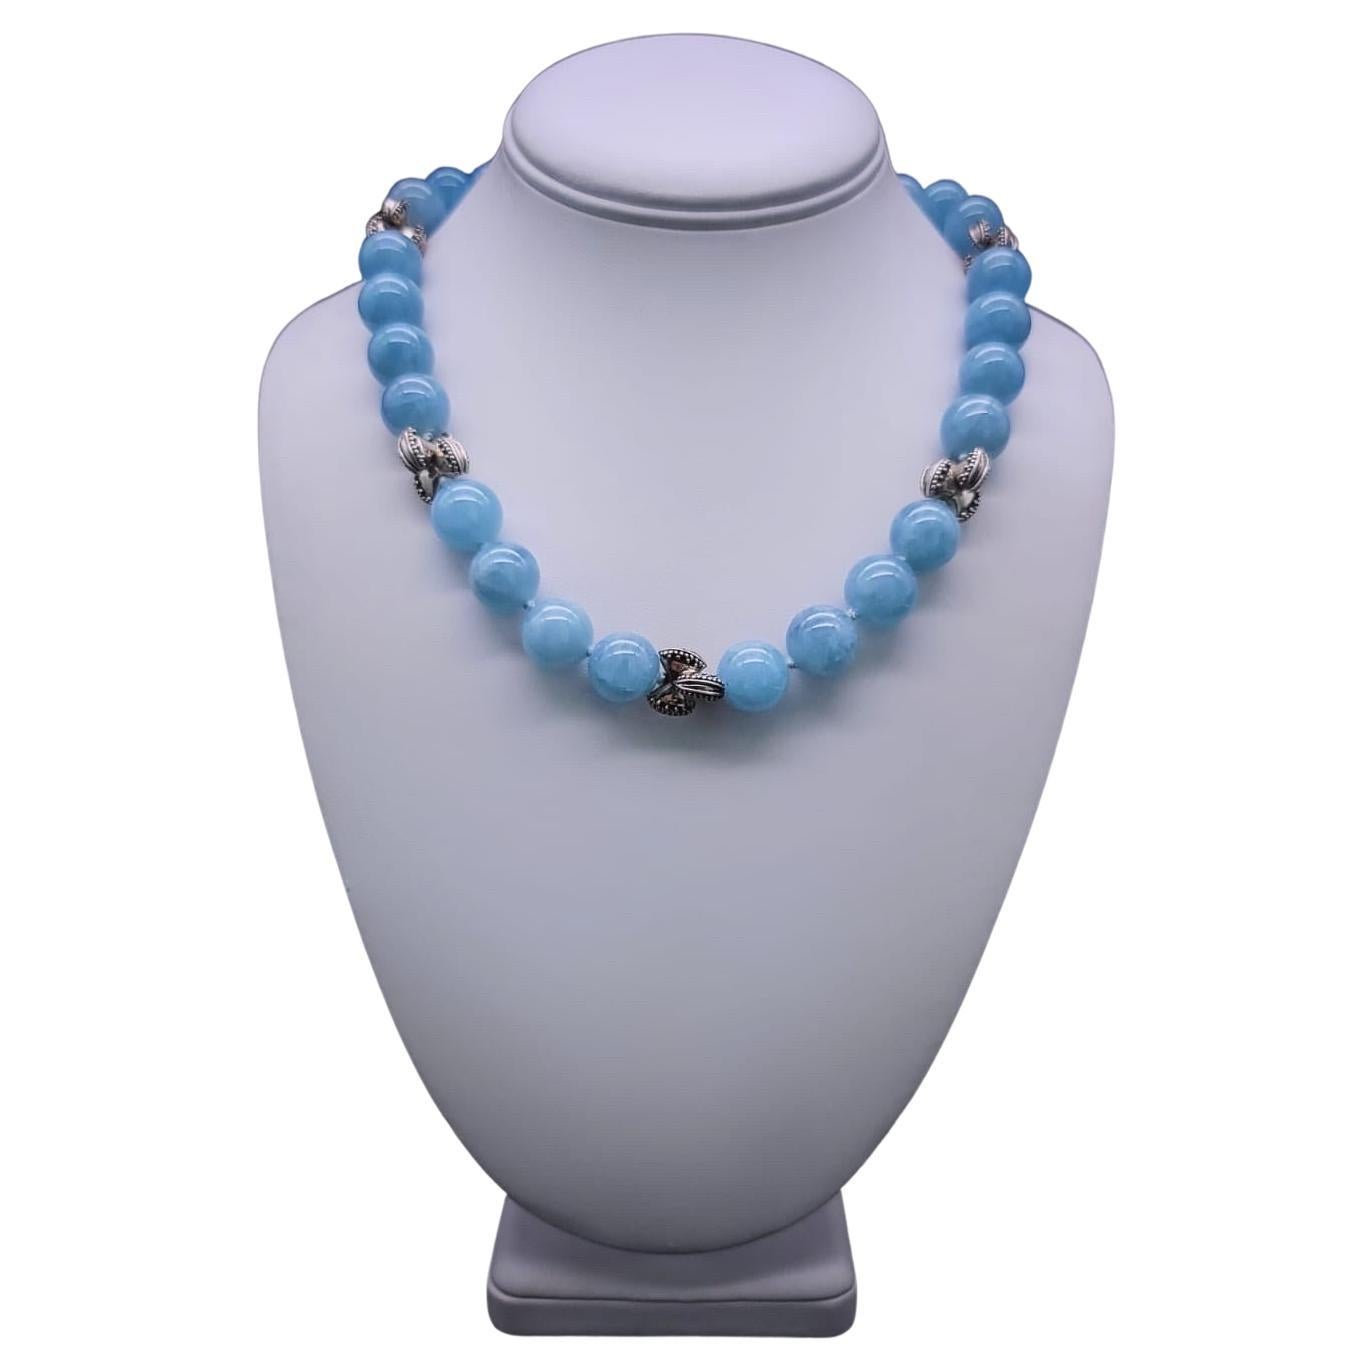 A.Jeschel Beautiful Aquamarine necklace. For Sale